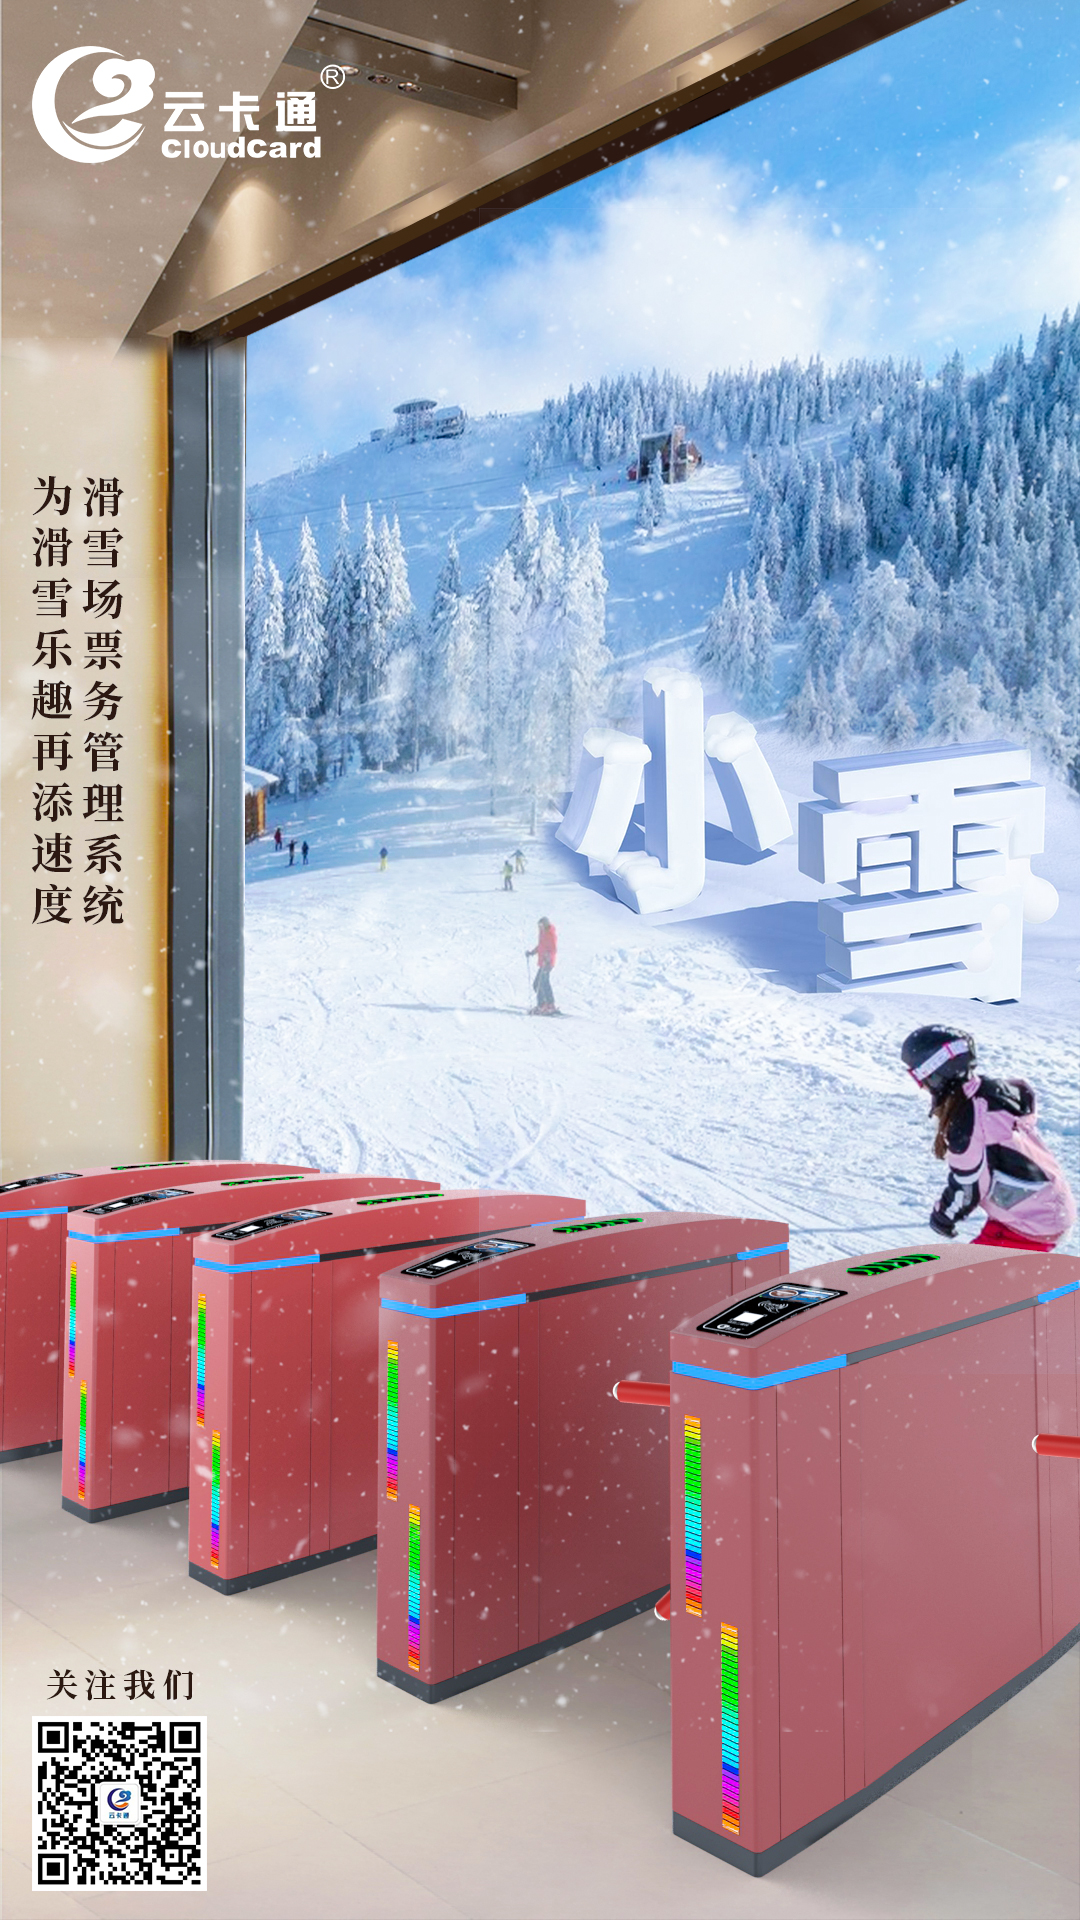 小雪节，云卡通滑雪场门票预订开启！畅玩冰雪乐趣！